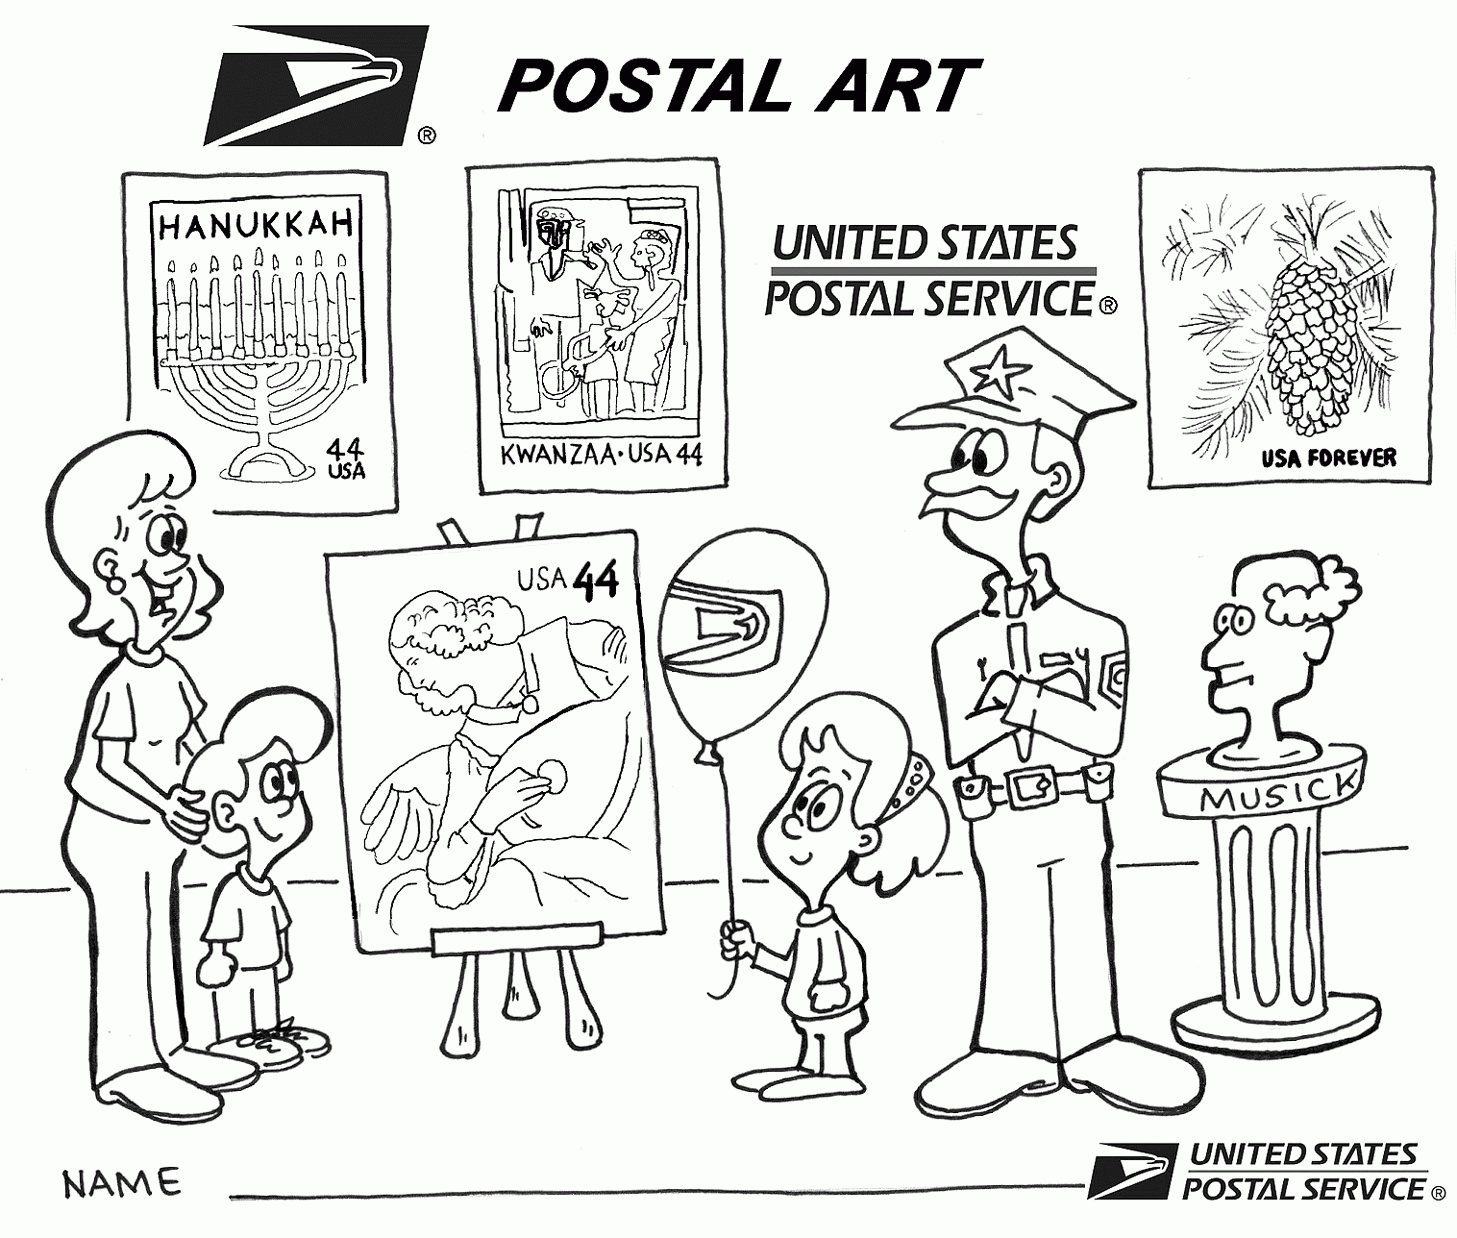 Postdienst